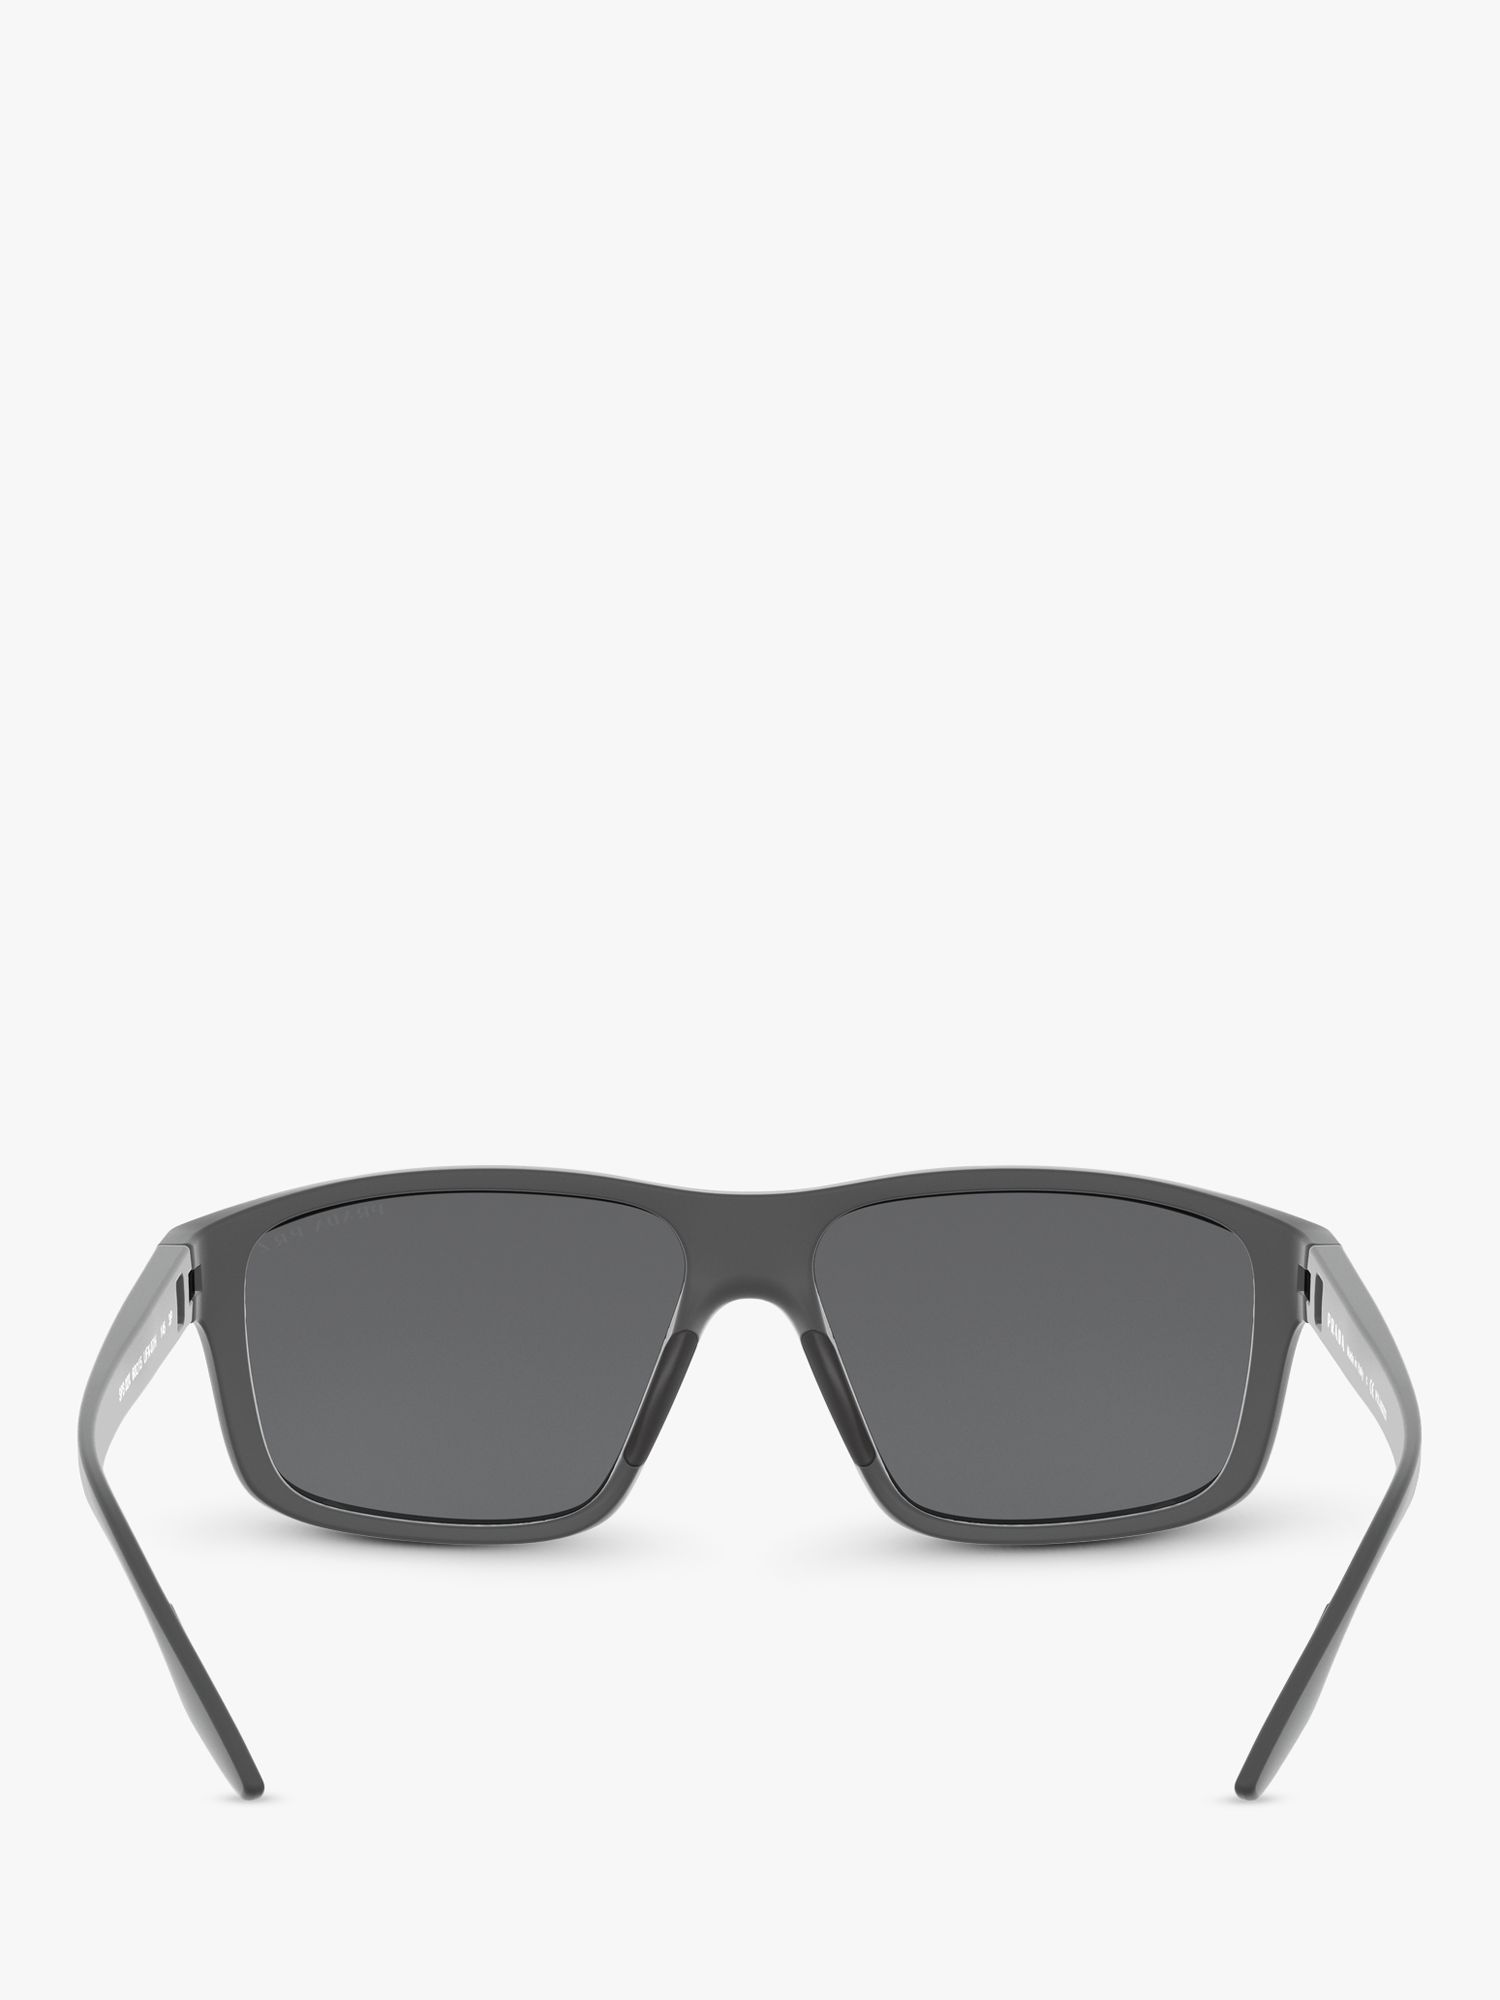 Prada Linea Rossa PS 02XS Men's Polarised Rectangular Sunglasses, Grey ...